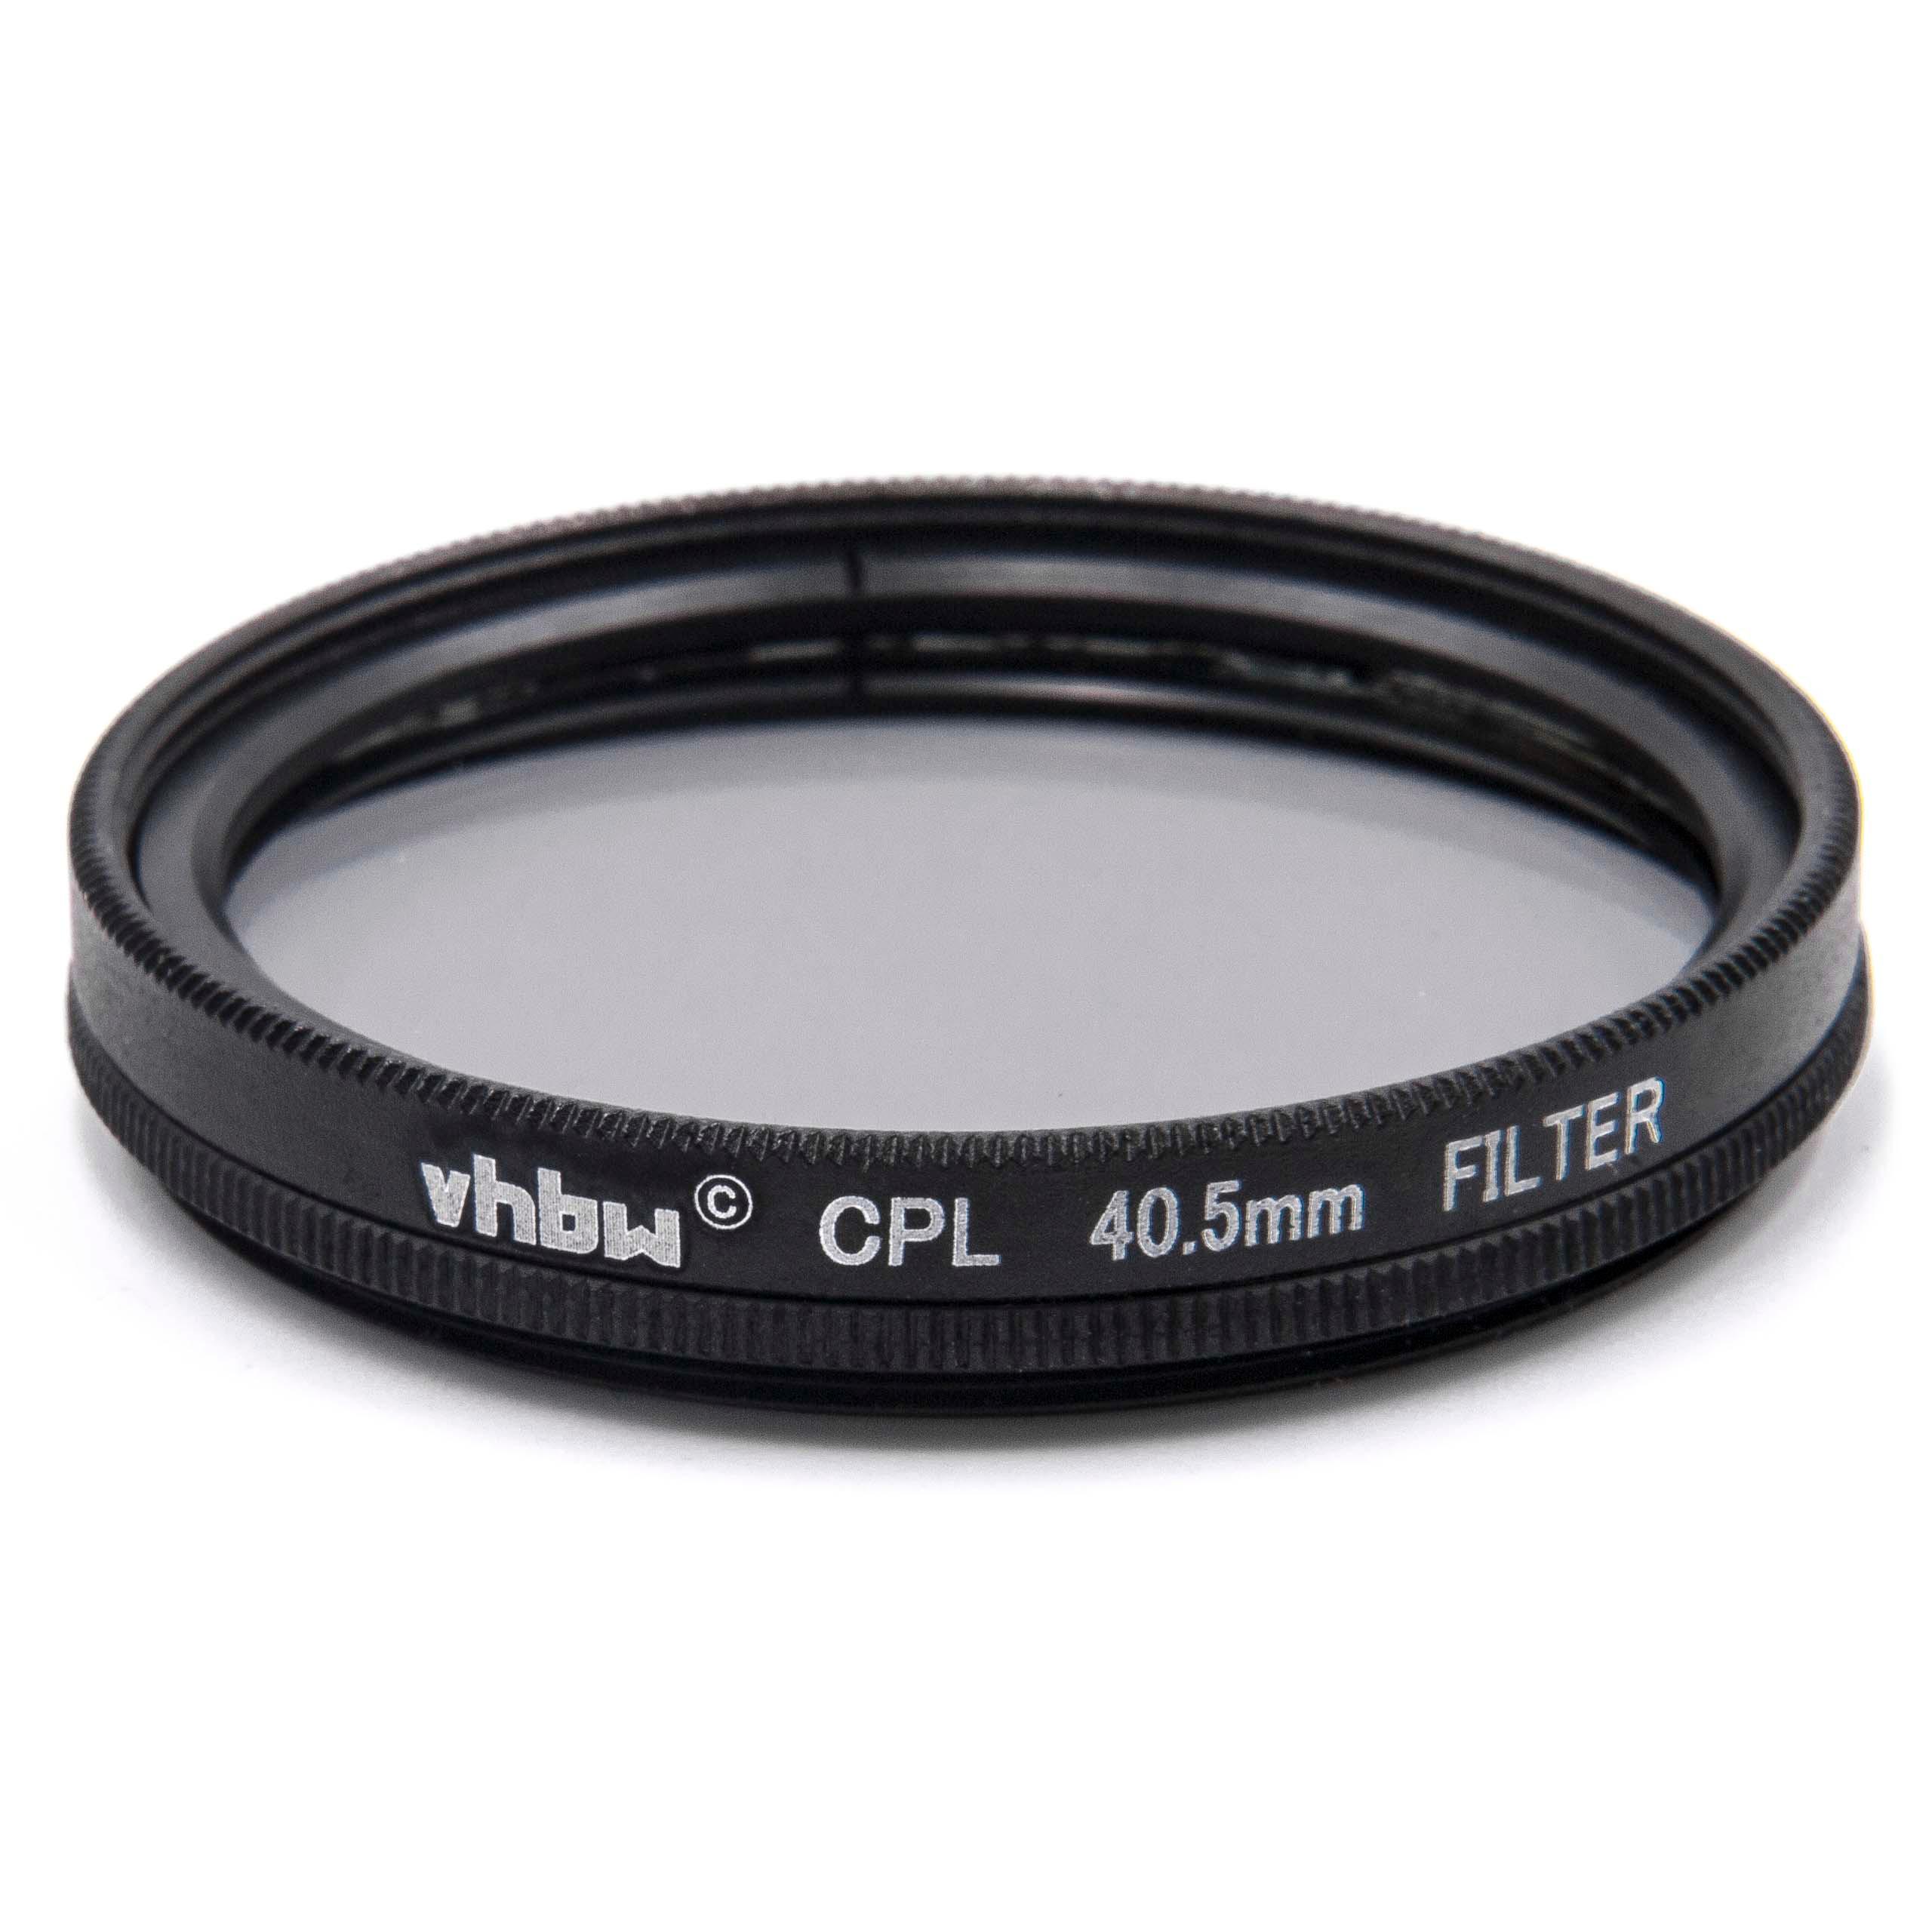 Filtro polarizador para objetivos y cámaras con rosca de filtro de 40,5 mm - Filtro CPL